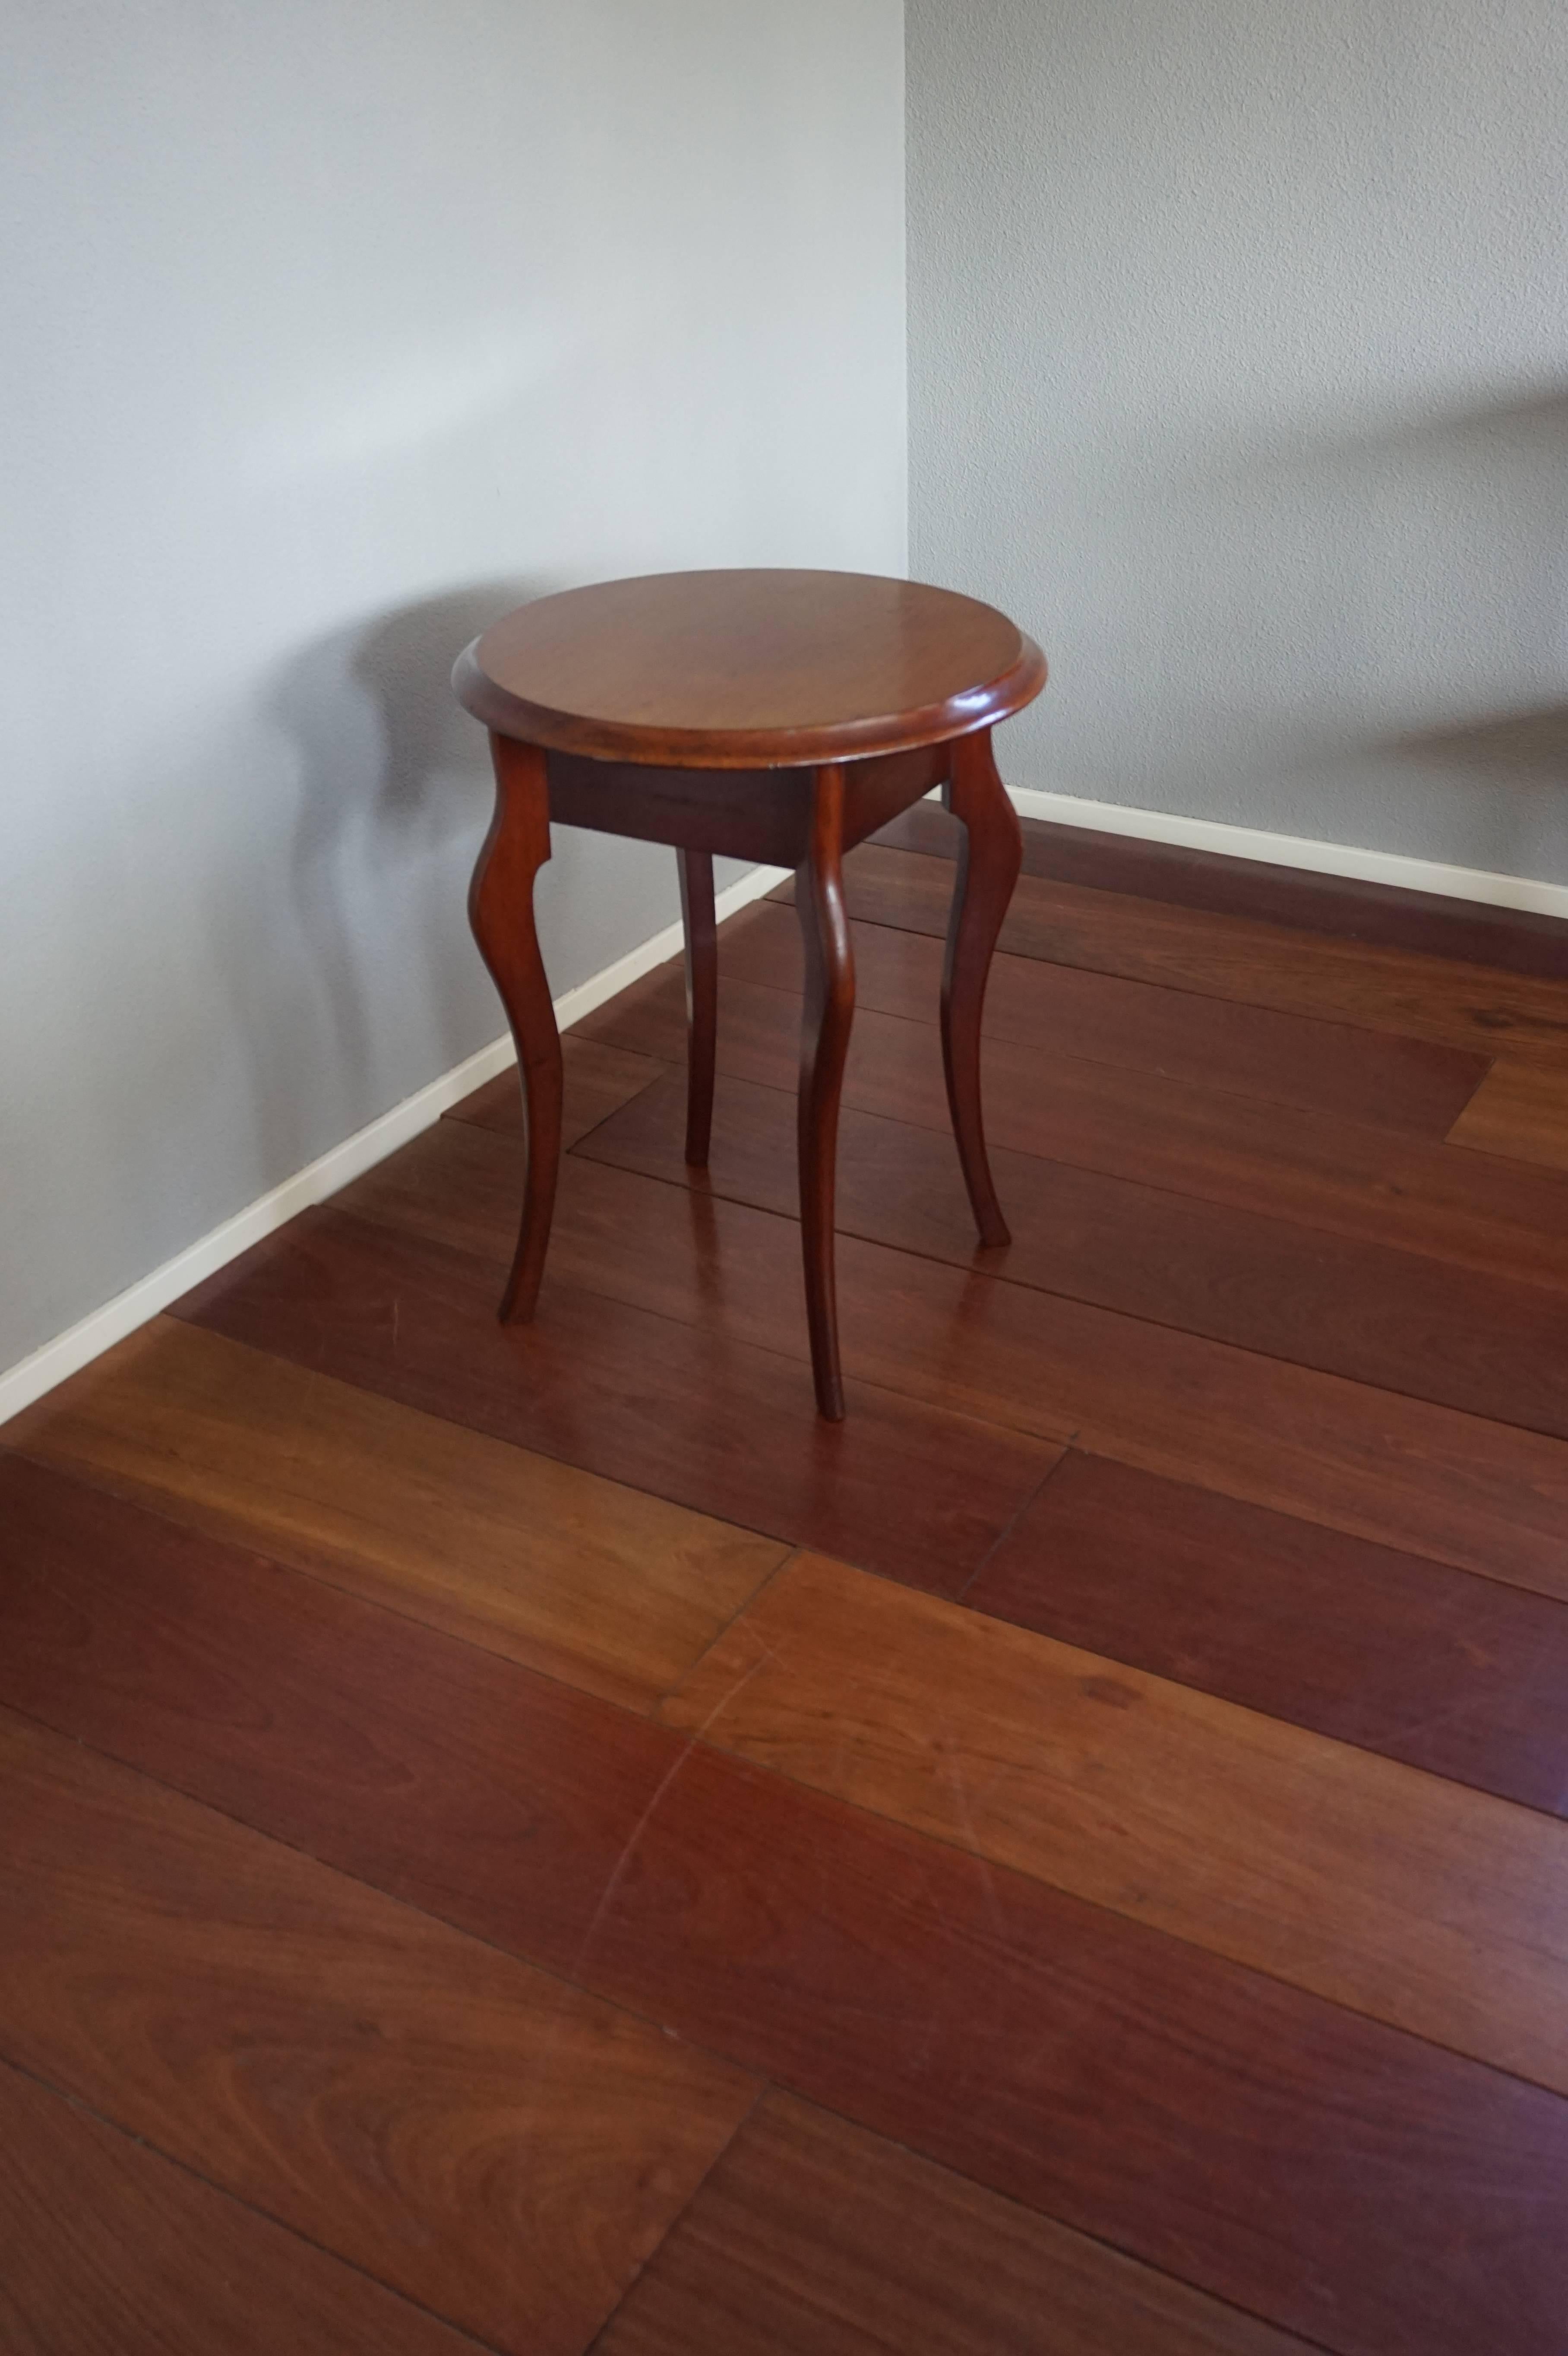 Table d'appoint Biedermeier de belle forme et de grande qualité.

Cette table d'appoint de la fin des années 1800, de forme élégante et entièrement fabriquée à la main, présente une magnifique patine. Cette table en acajou de qualité est aussi